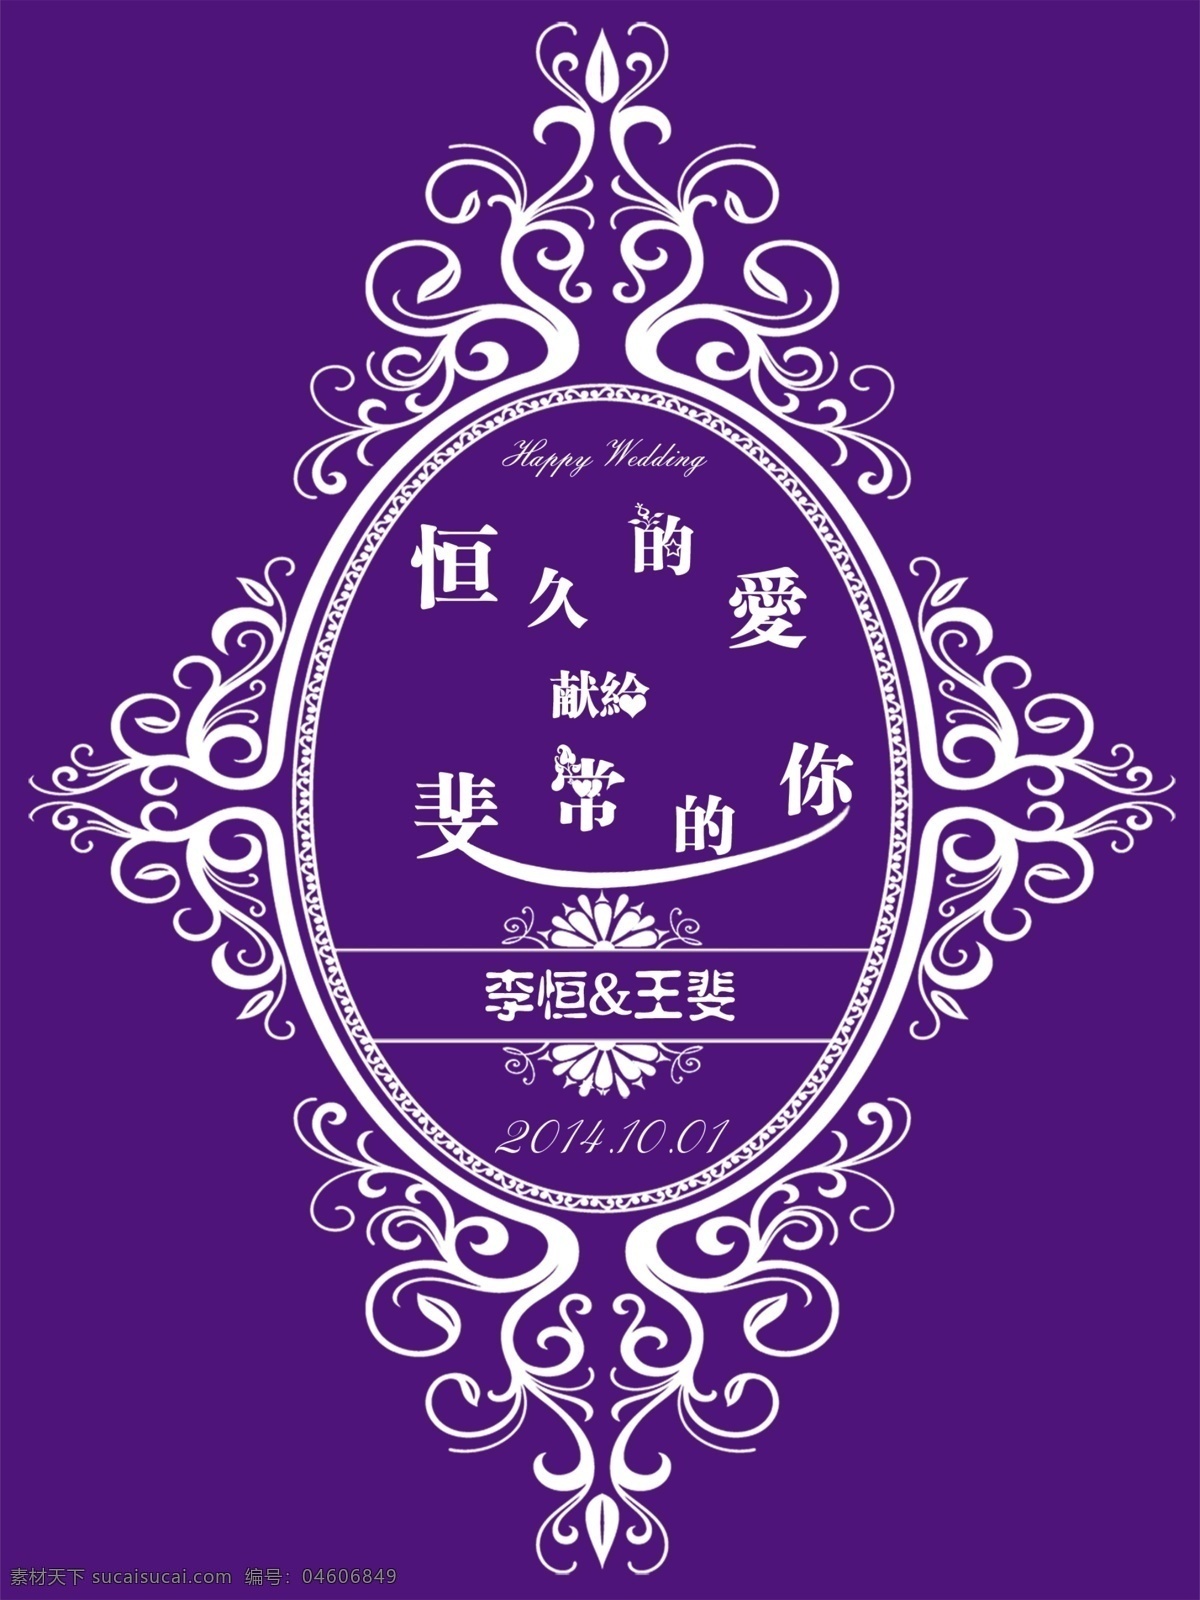 紫色 婚礼 logo 恒久 爱 展板 分层 psd分层 婚礼logo 婚礼展板 恒久的爱 psd源文件 logo设计